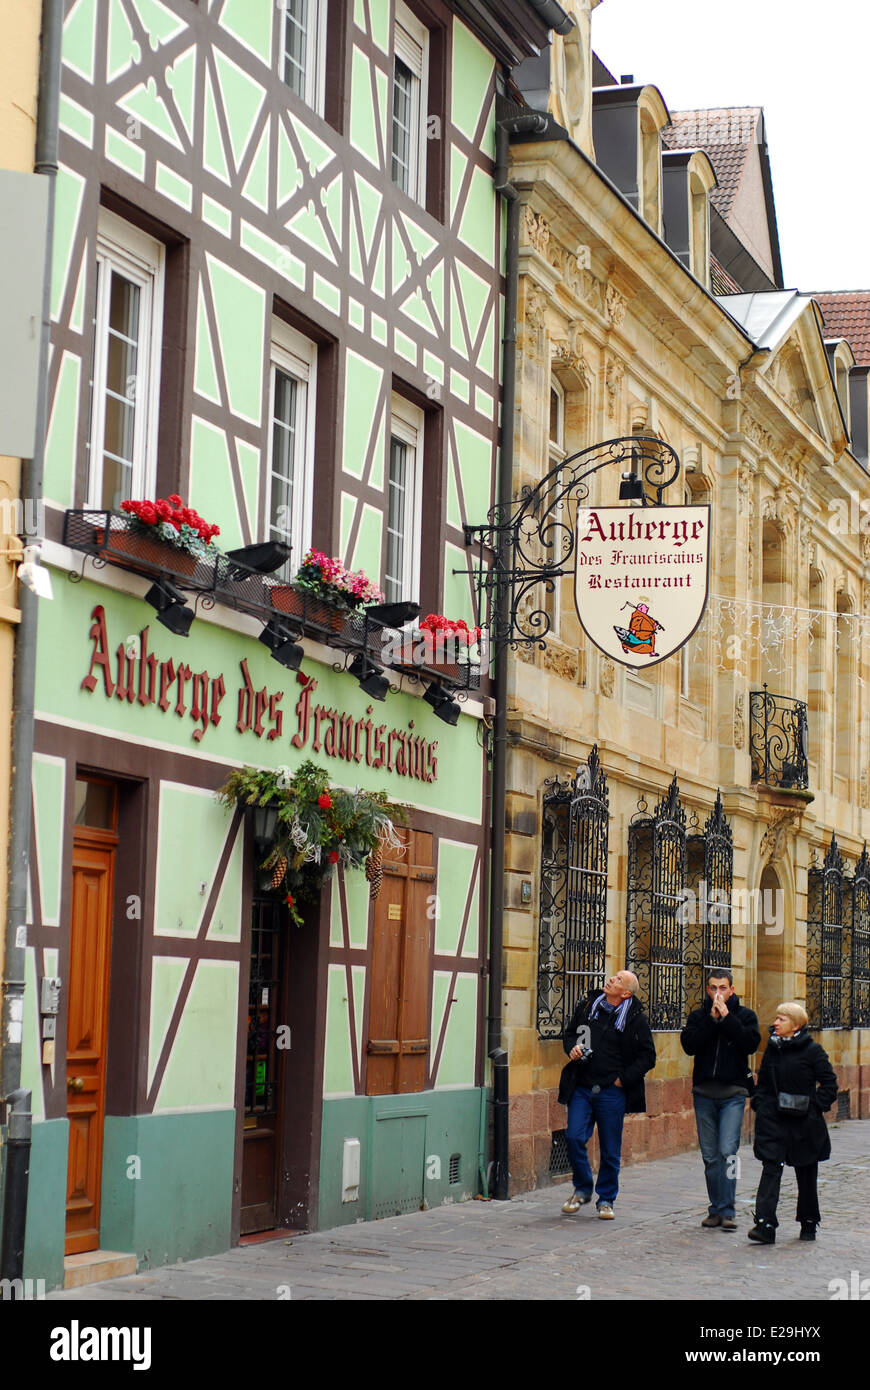 Restaurant Zeichen und Fassade in Mulhouse, Frankreich Stockfoto